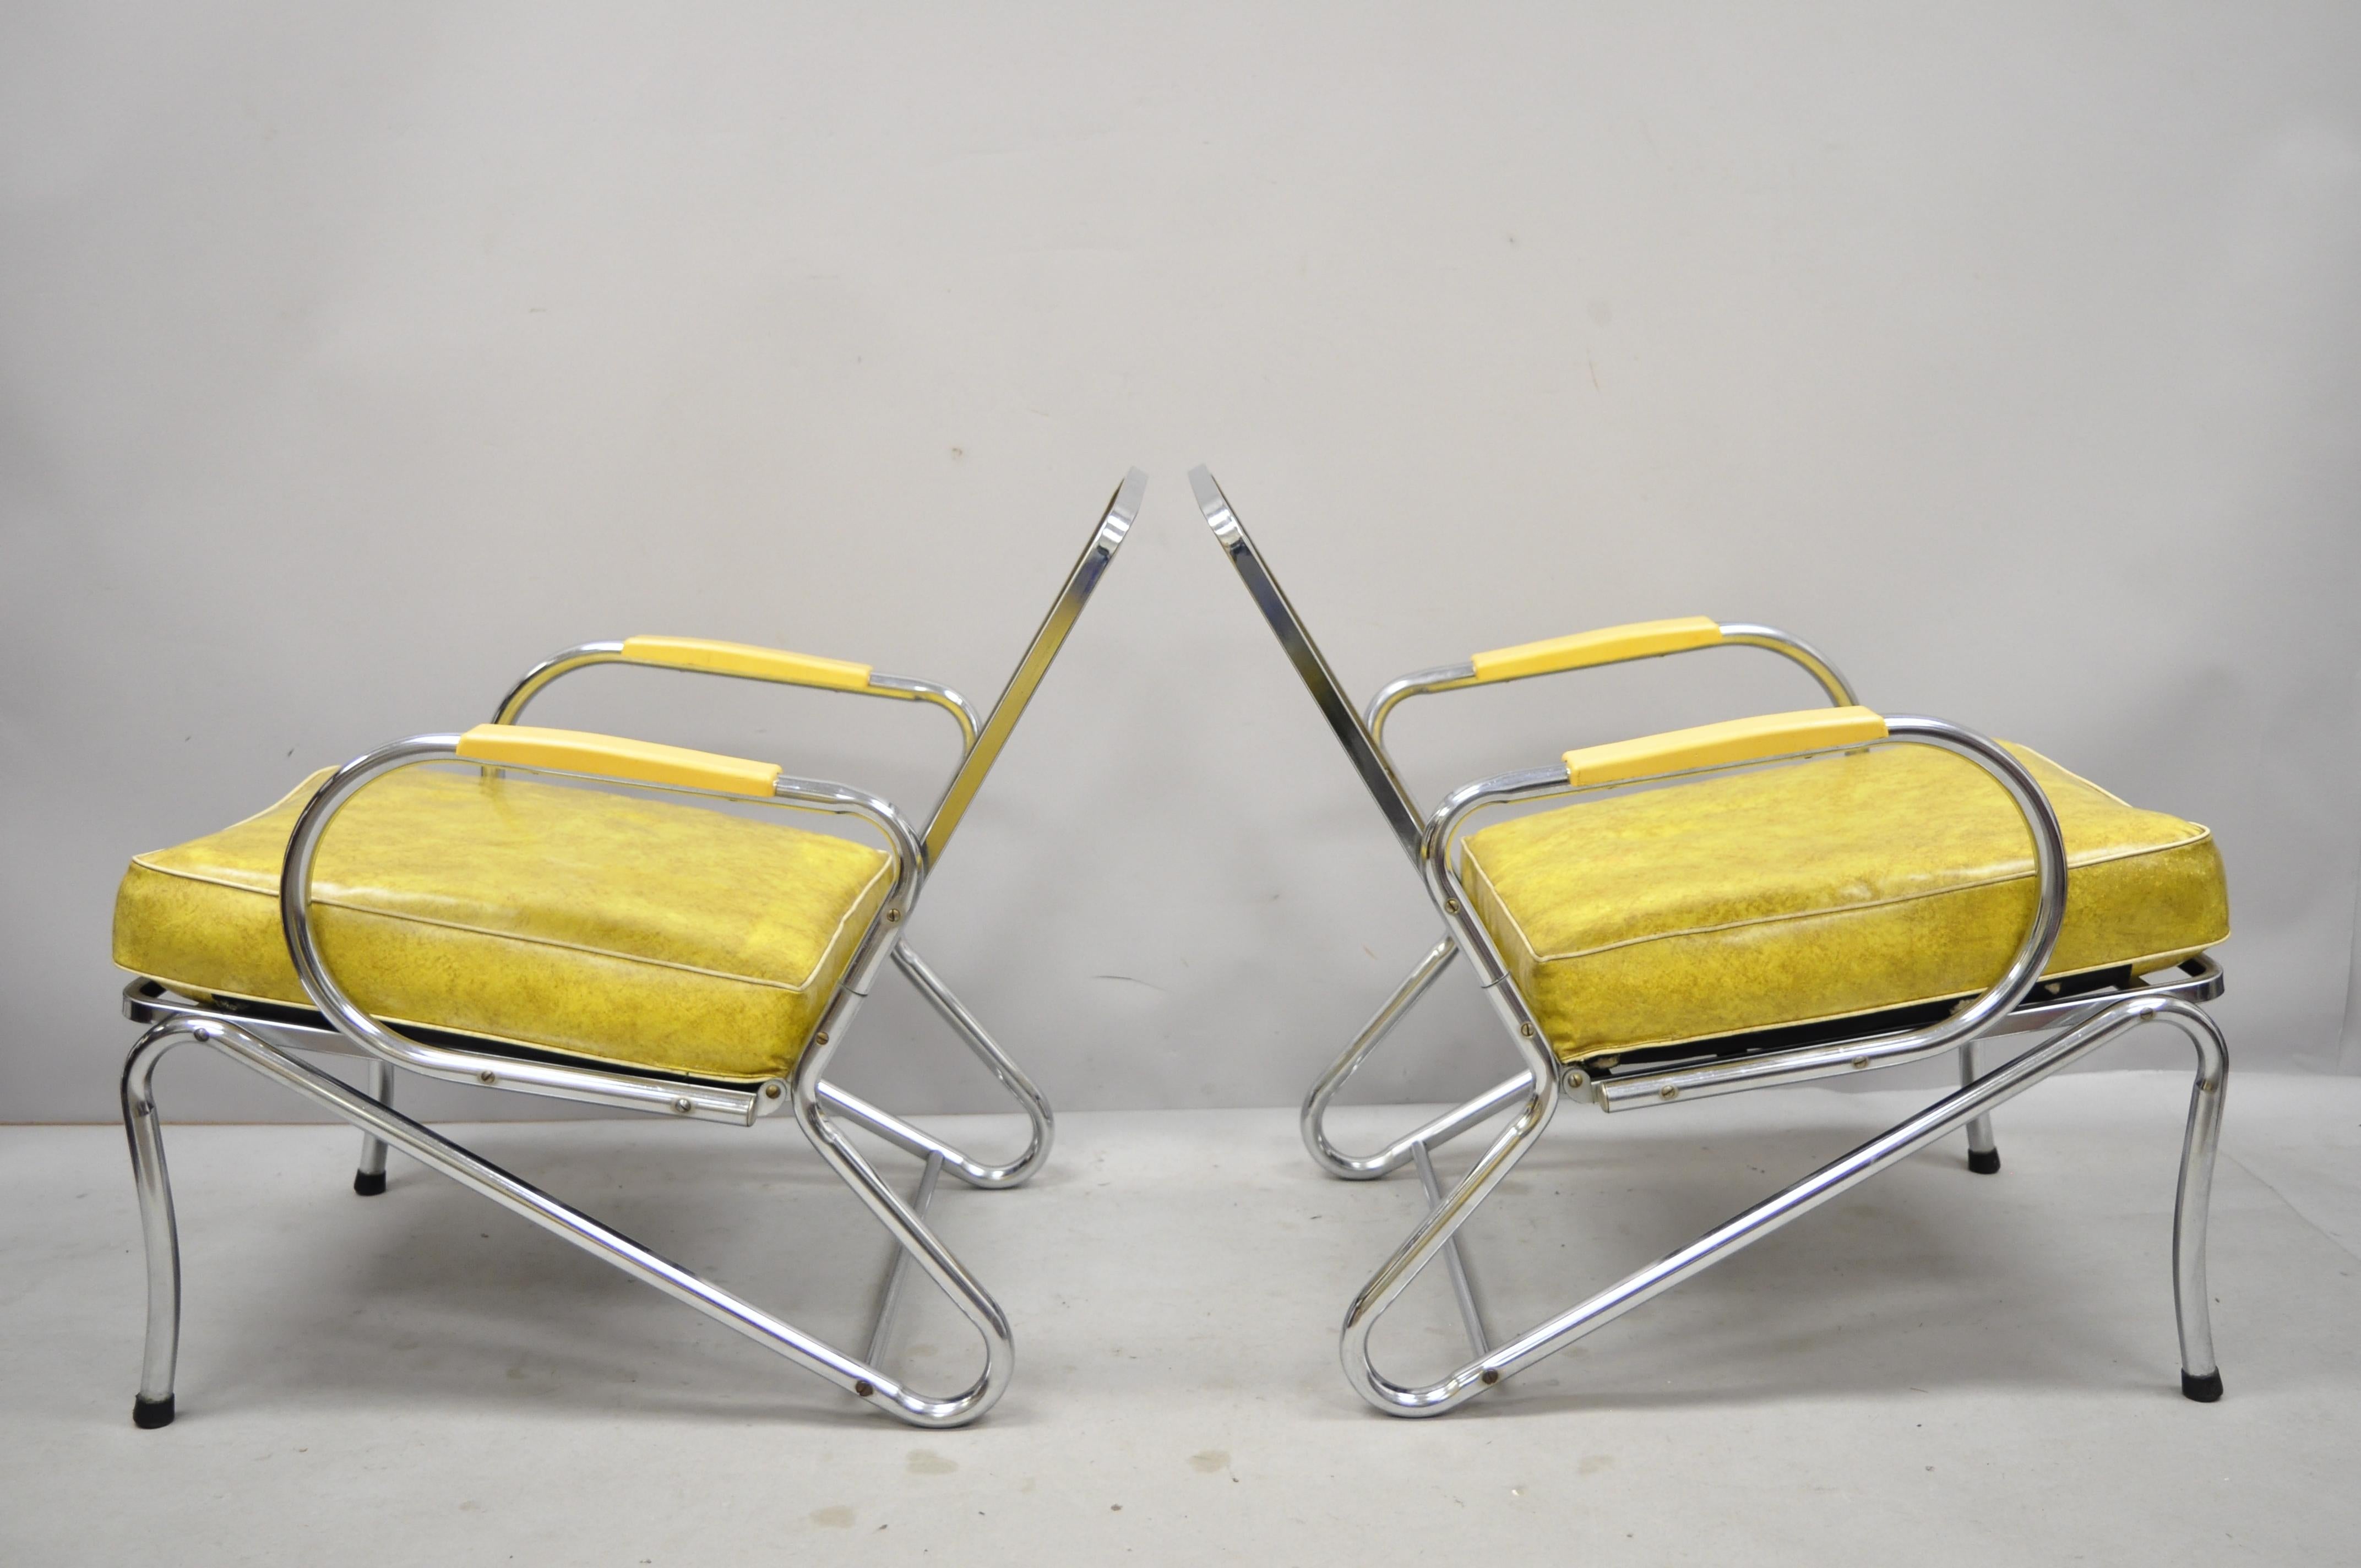 Paire de fauteuils club lounge Art Déco tubulaires en vinyle jaune chromé attribués à Lloyd Mfg. La liste comprend les coussins en vinyle d'origine, les cadres en métal, les lignes modernistes nettes, la forme sculpturale épurée. Fabricant non